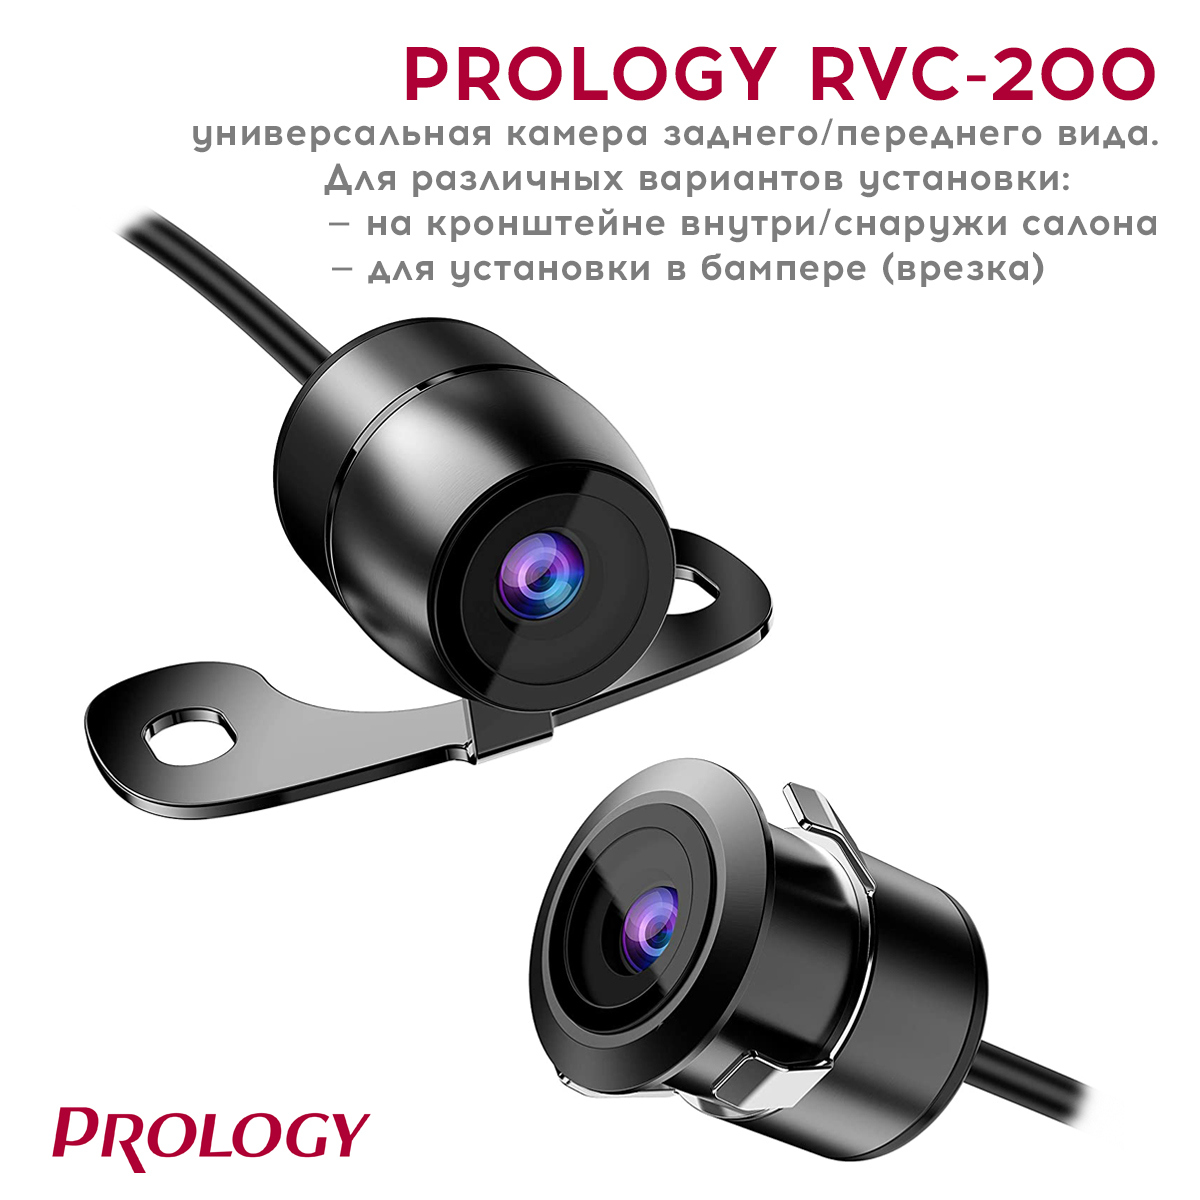 У нас новинка!  Новая универсальная камера PROLOGY RVC-200 переднего/заднего вида.